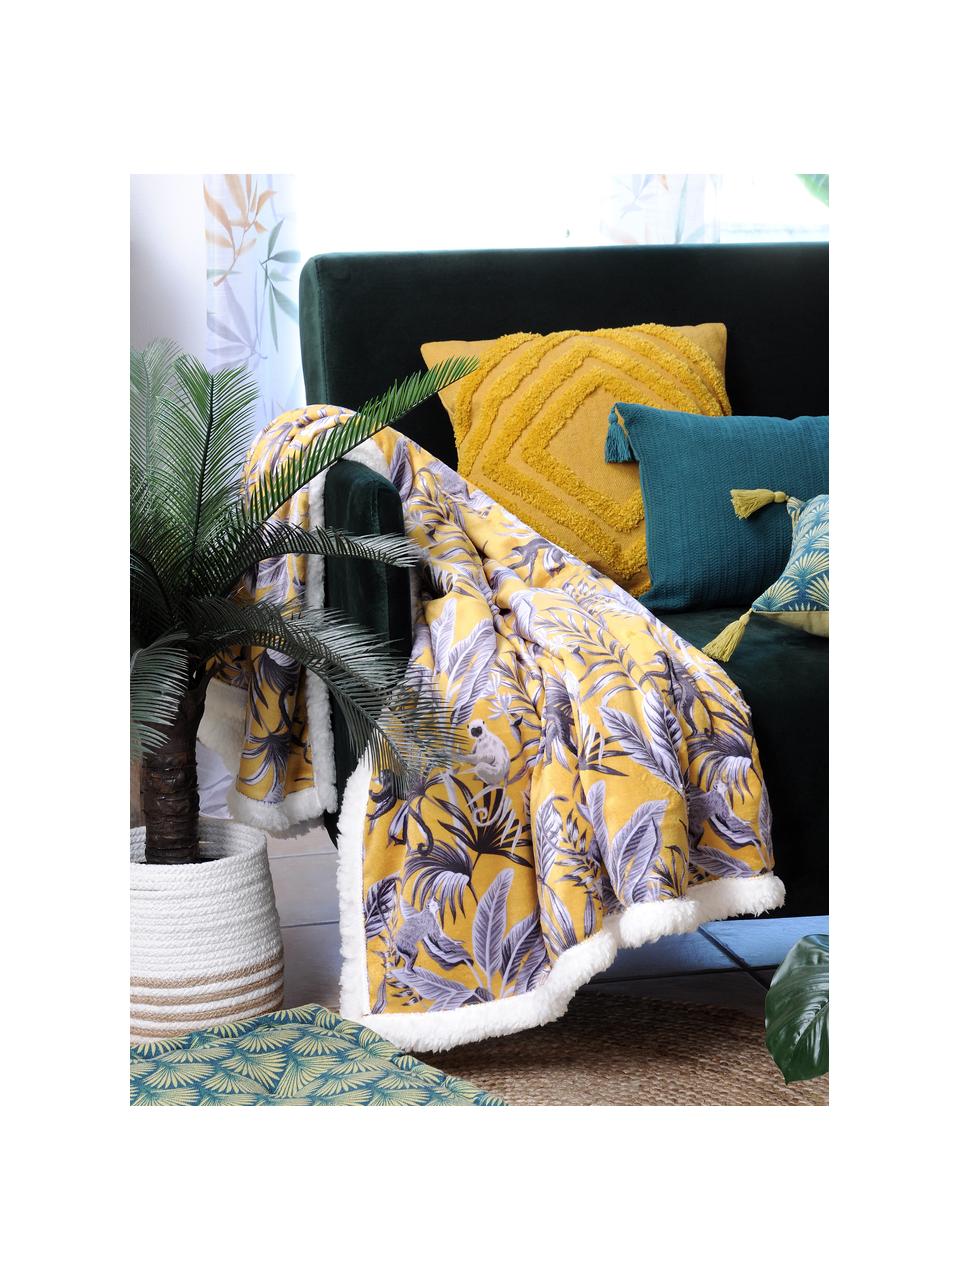 Gelbes Kissen Mona mit getufteter Verzierung, mit Inlett, Bezug: 100% Baumwolle, Senfgelb, 40 x 40 cm